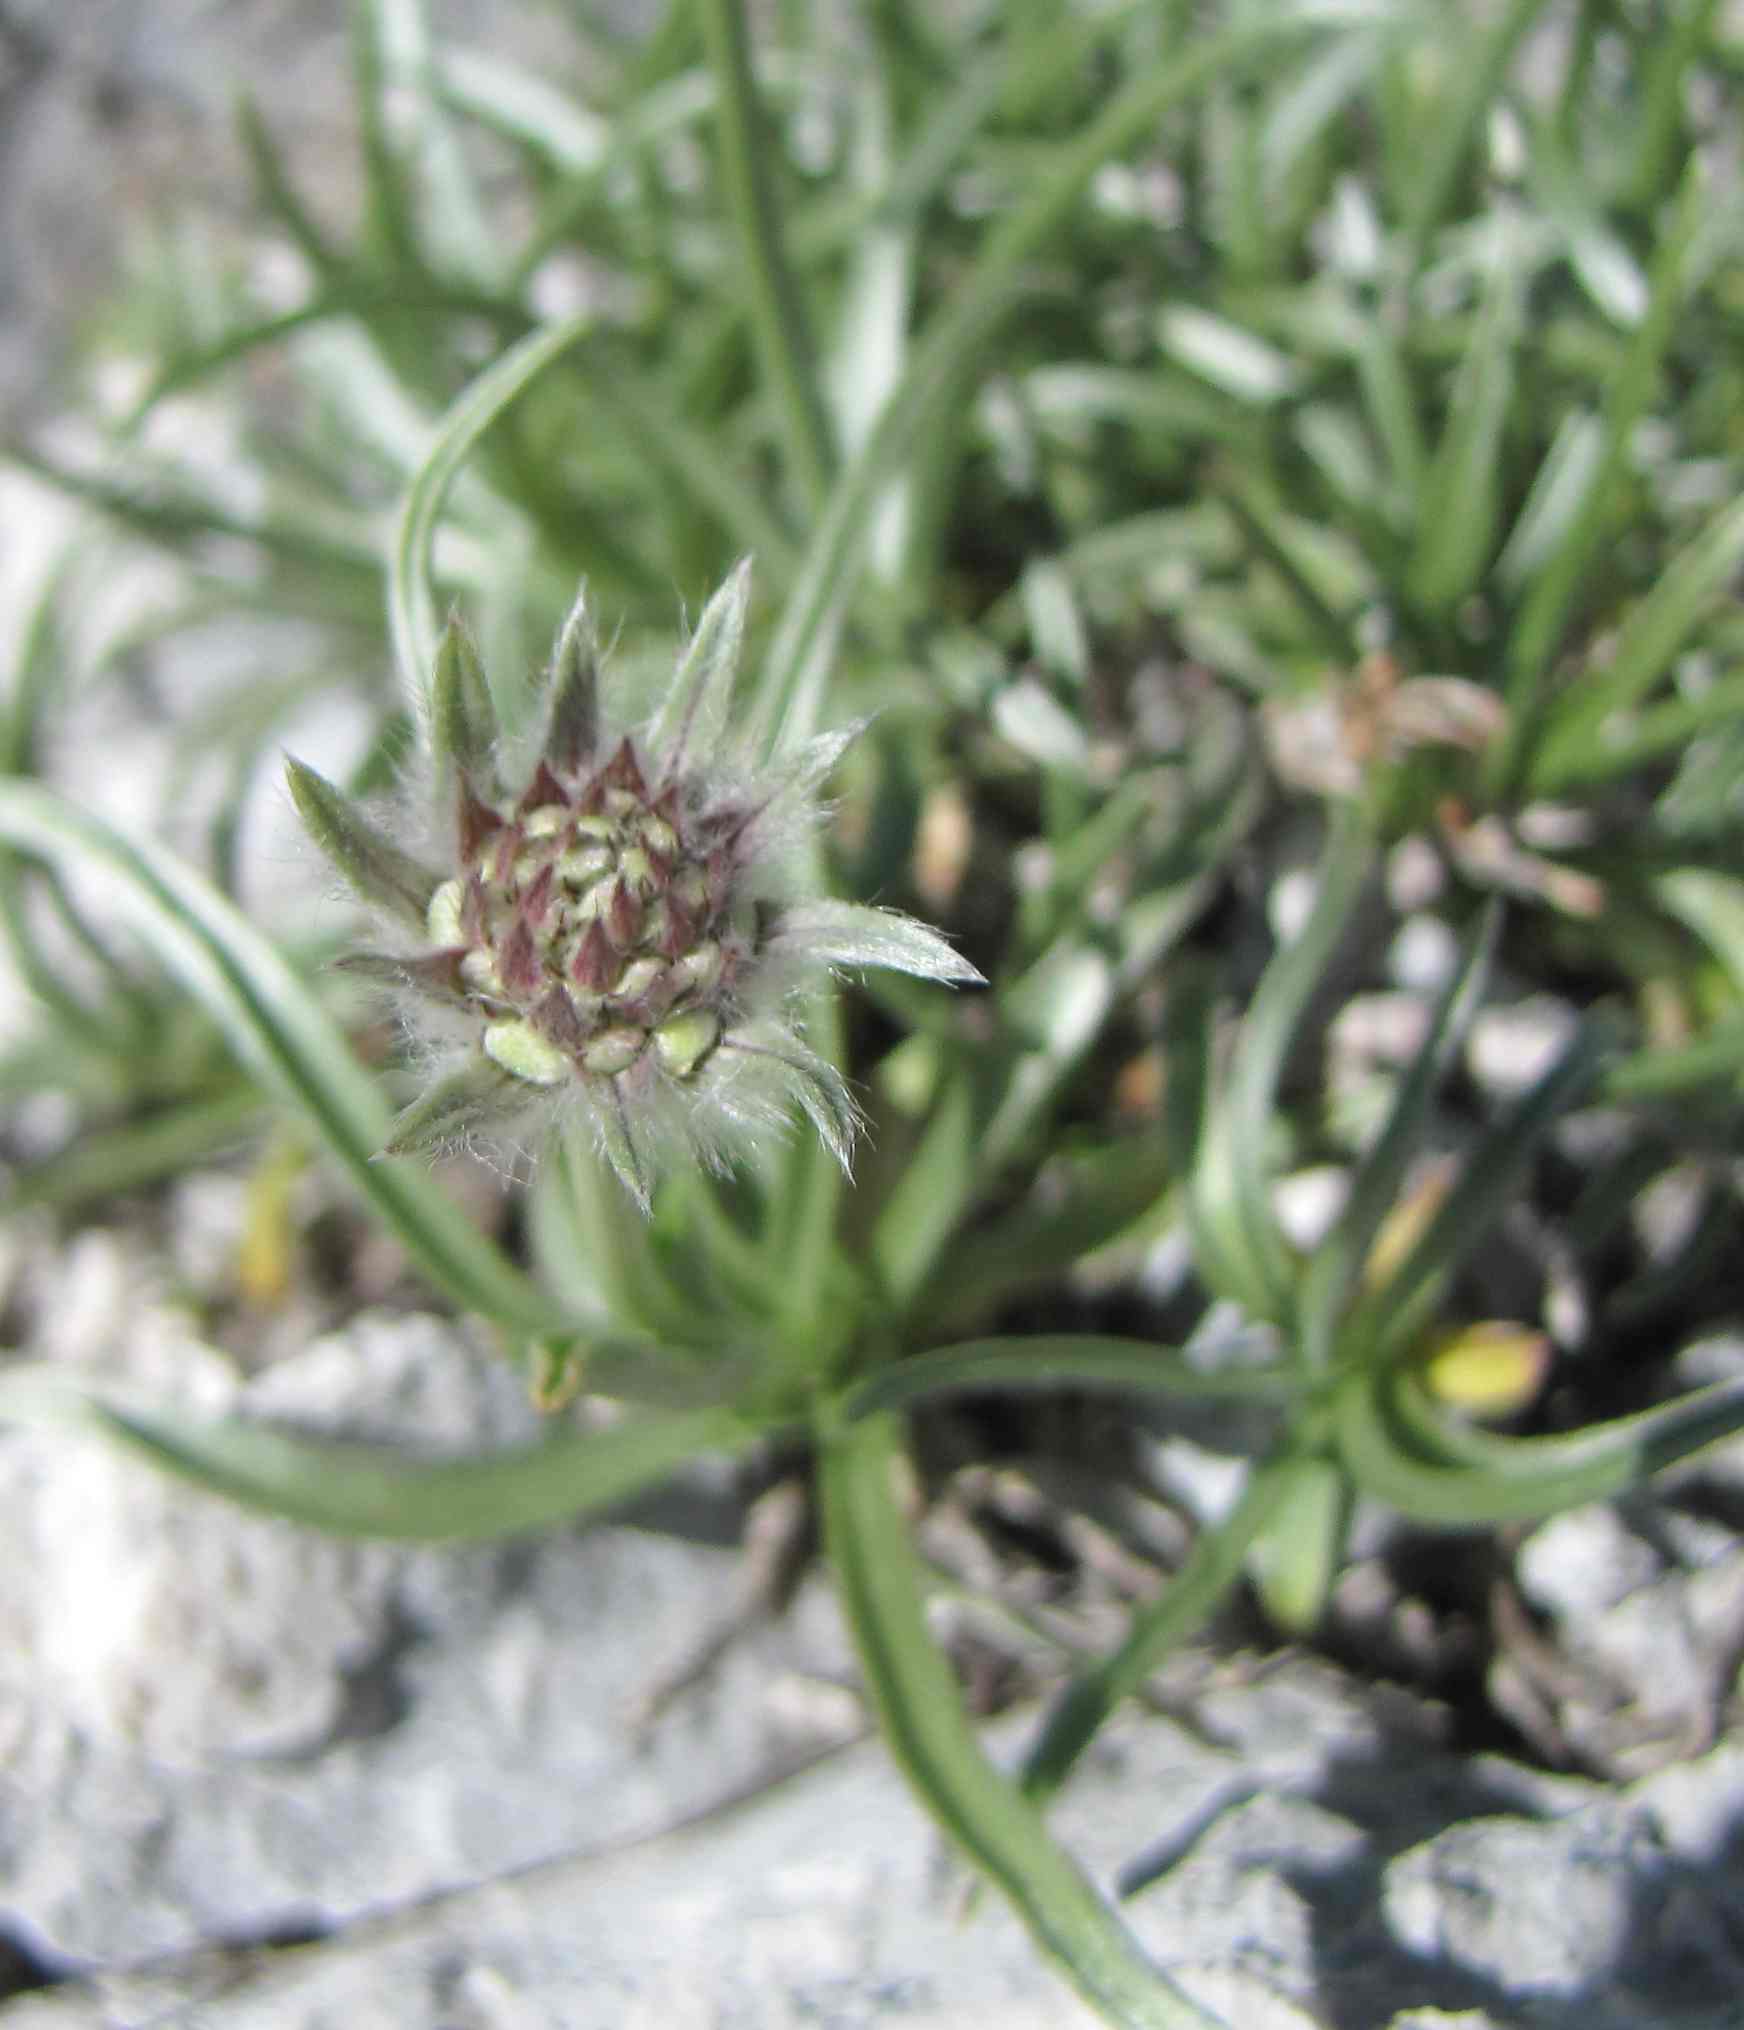 Lomelosia graminifolia / Vedovina strisciante